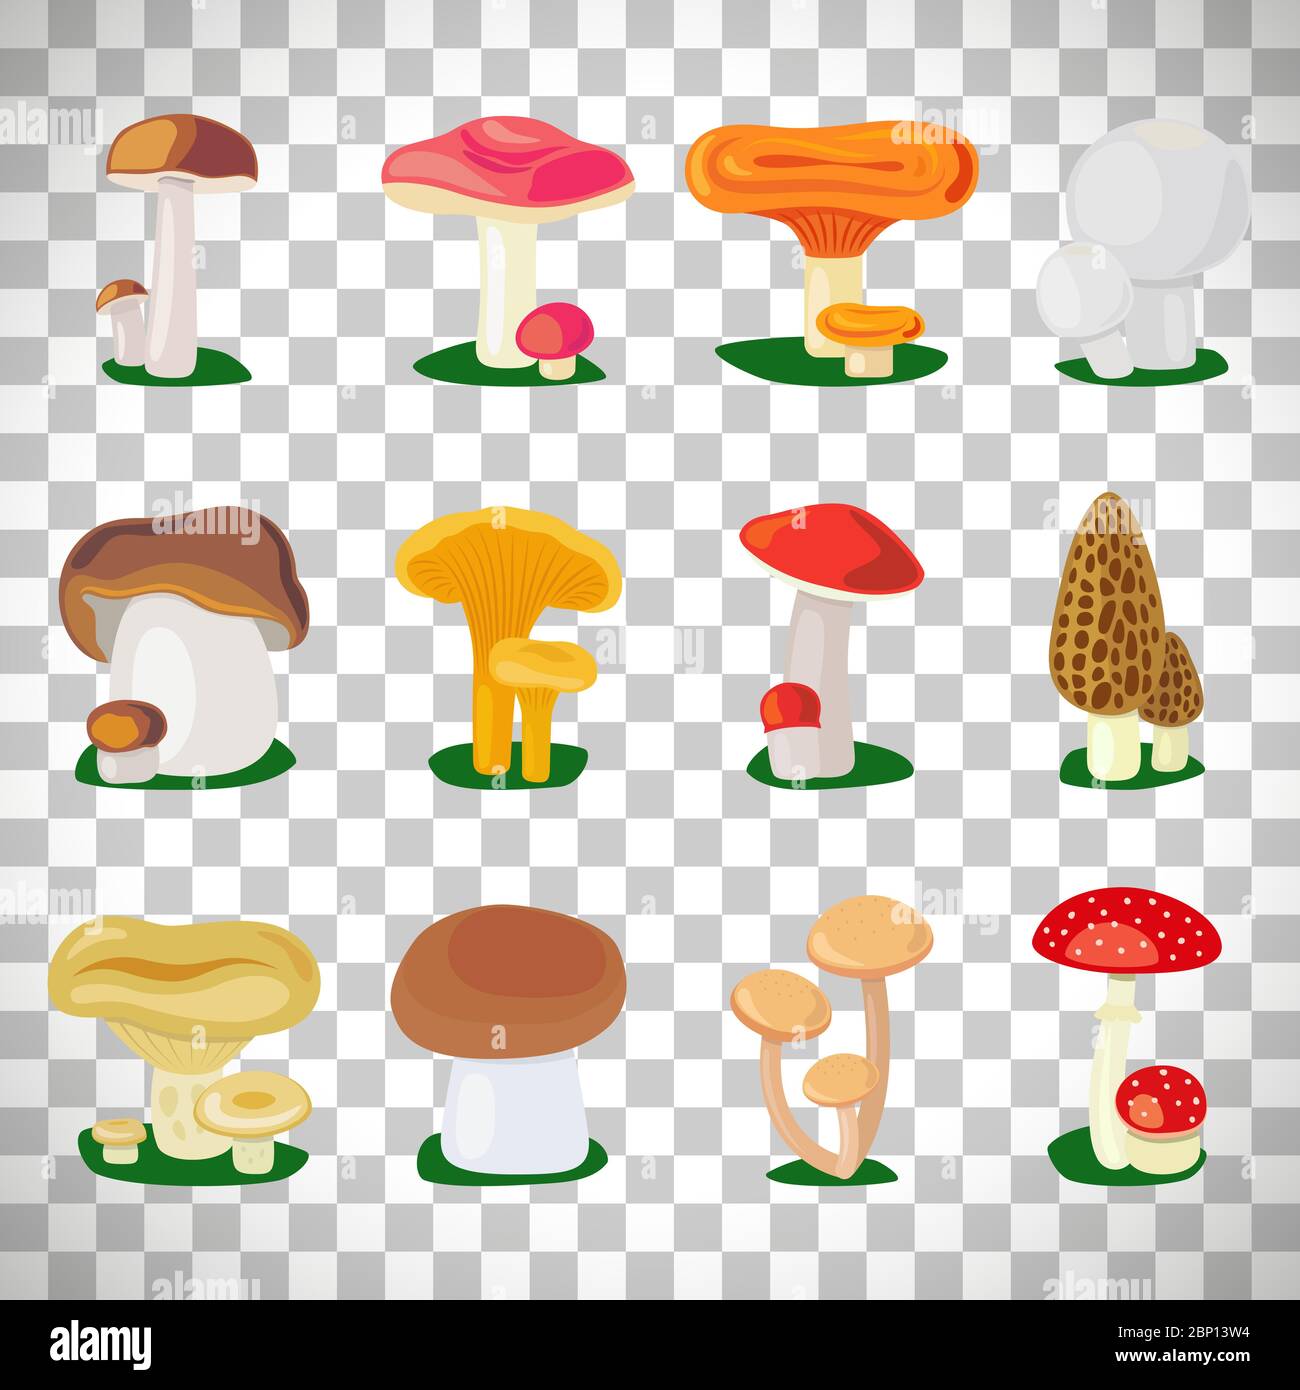 Insieme di illustrazioni di funghi commestibili e toadsgabelli isolati su sfondo trasparente Illustrazione Vettoriale